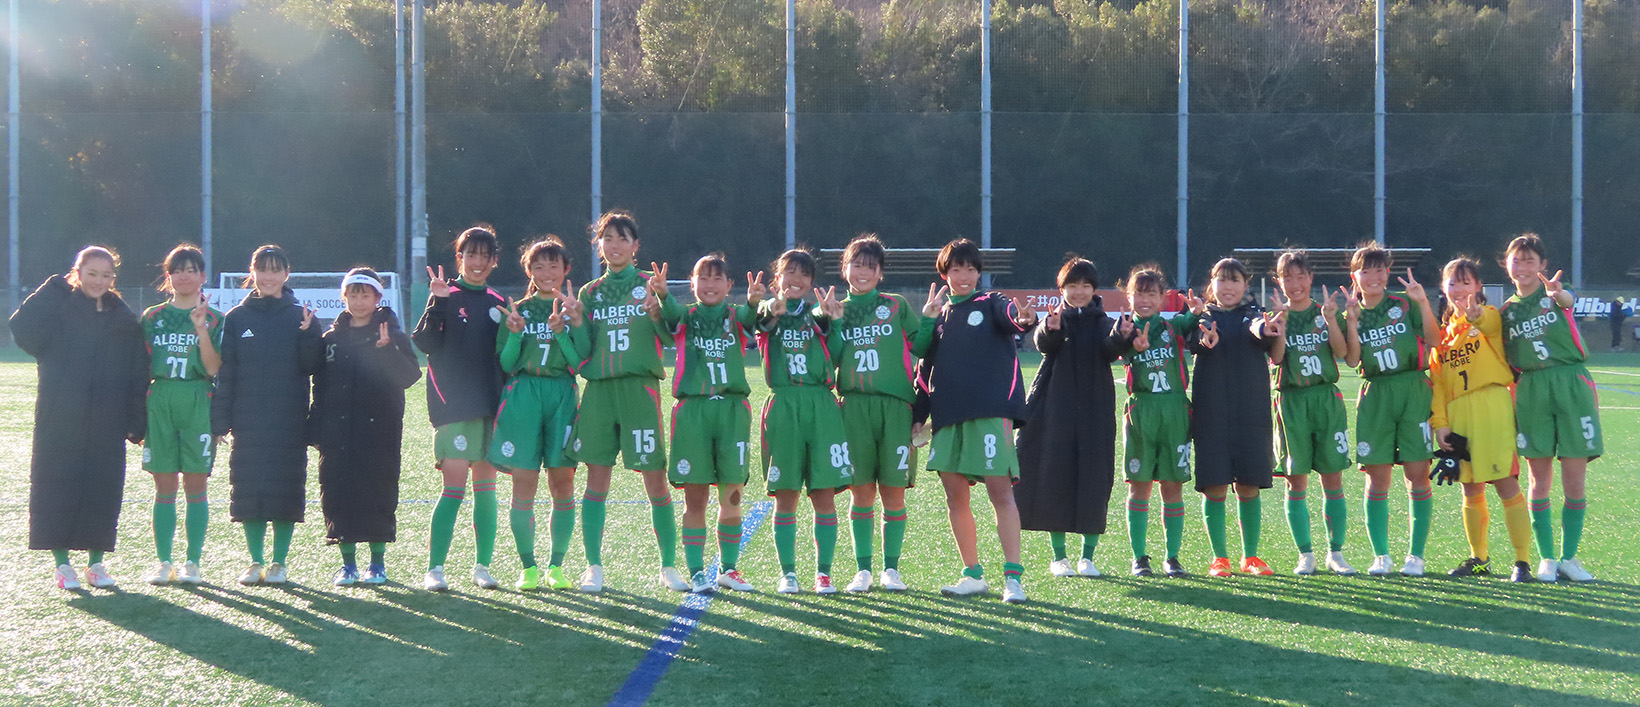 記事 女子中学生サッカーチーム「アルベロ神戸」のアイキャッチ画像